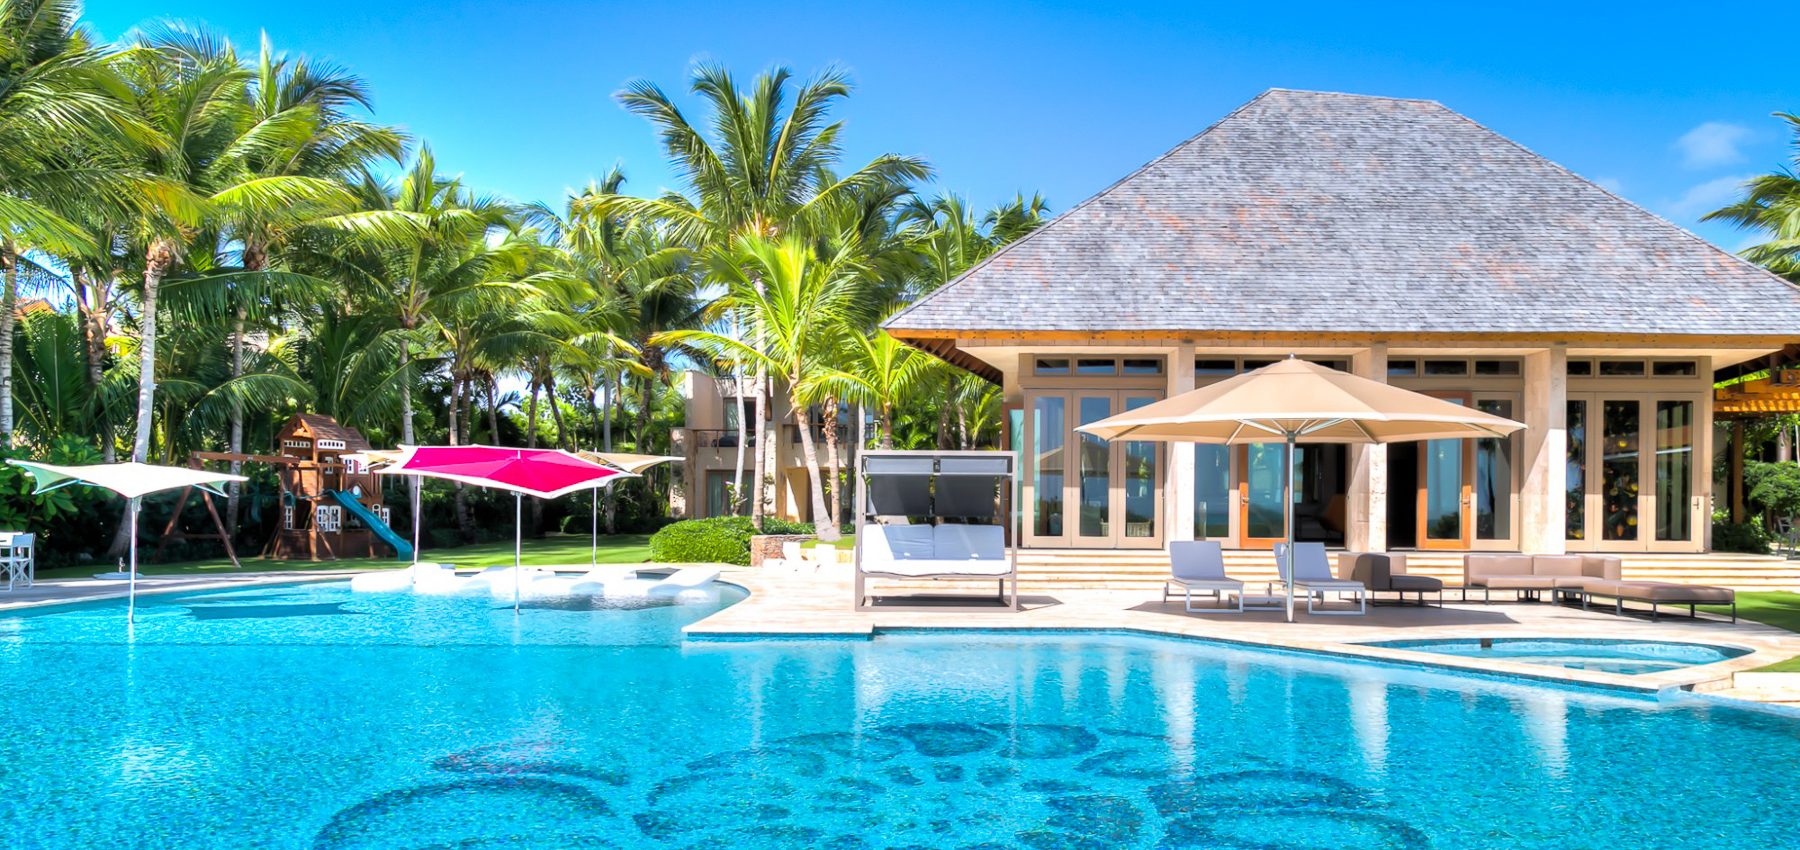 Oceanfront Arrecife Villa with fabulous Amenities and 7 bedrooms